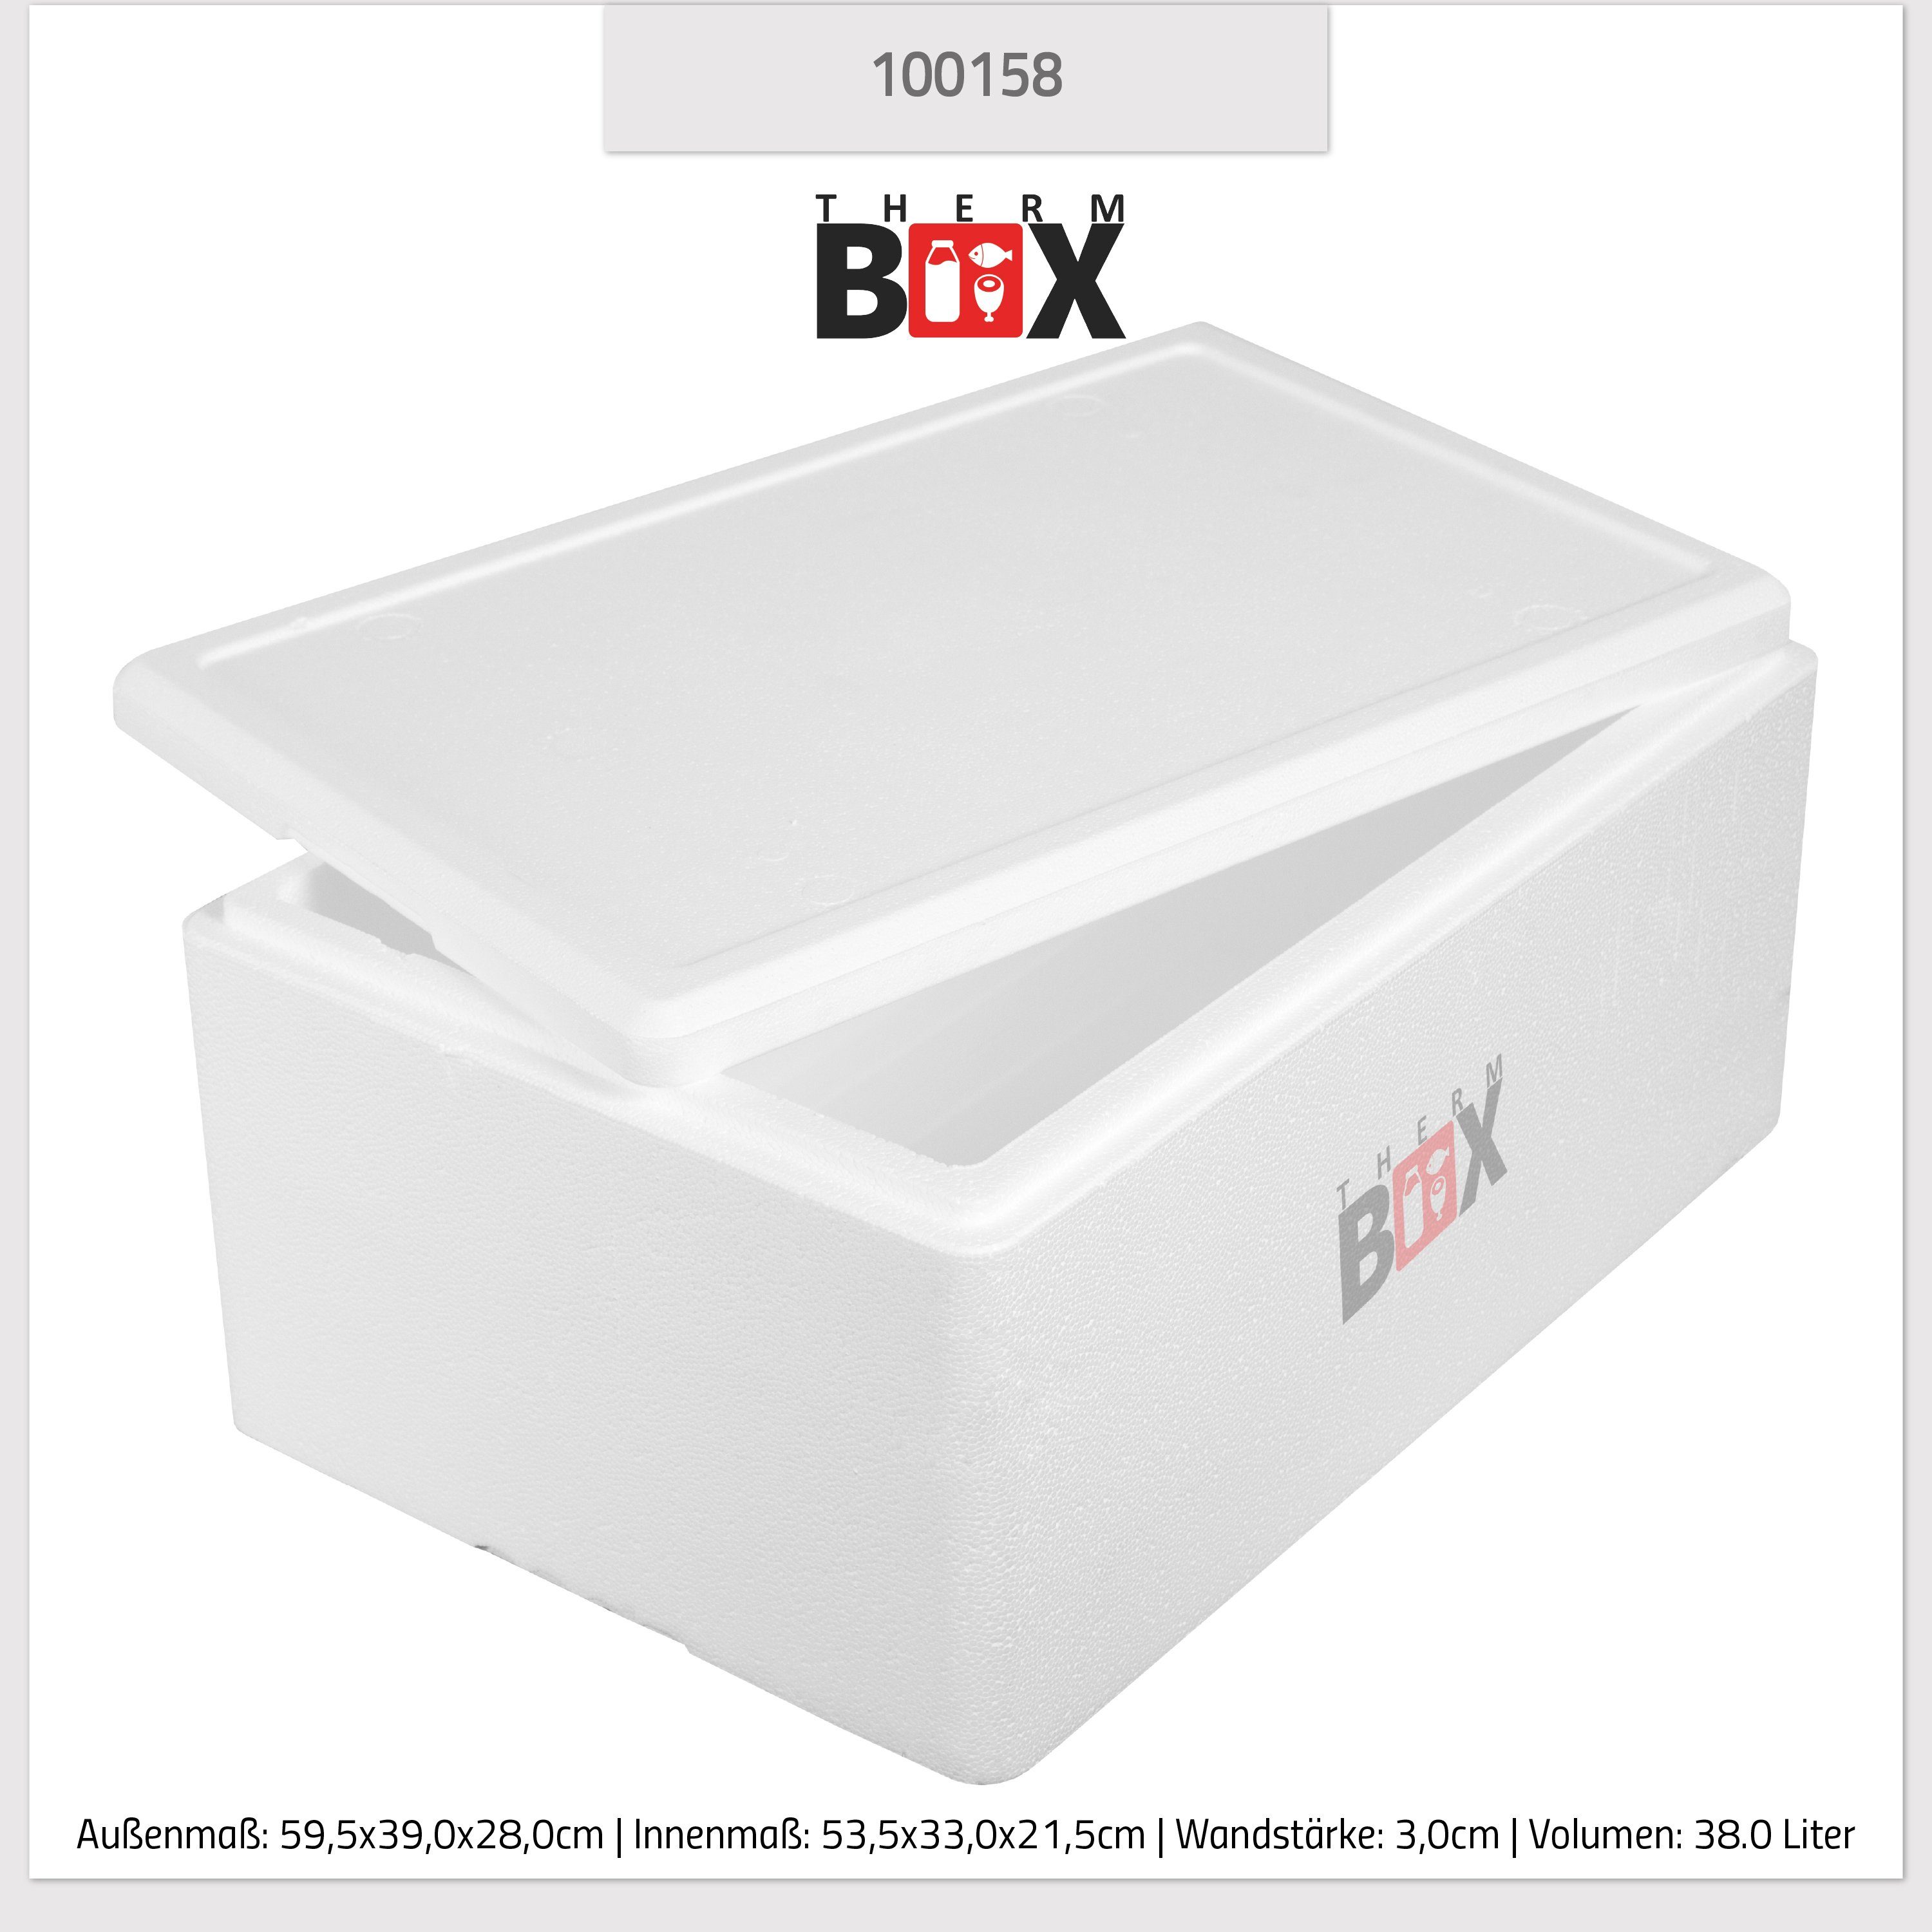 Liter, Warmhaltebox im Wiederverwendbar Isolierbox Styropor-Verdichtet, Box Kühlbox THERM-BOX Thermobehälter Styroporbox Deckel Innen: Karton), 3cm Wand: 0-tlg., 38W Thermobox (1, 38 mit 53x33x21cm